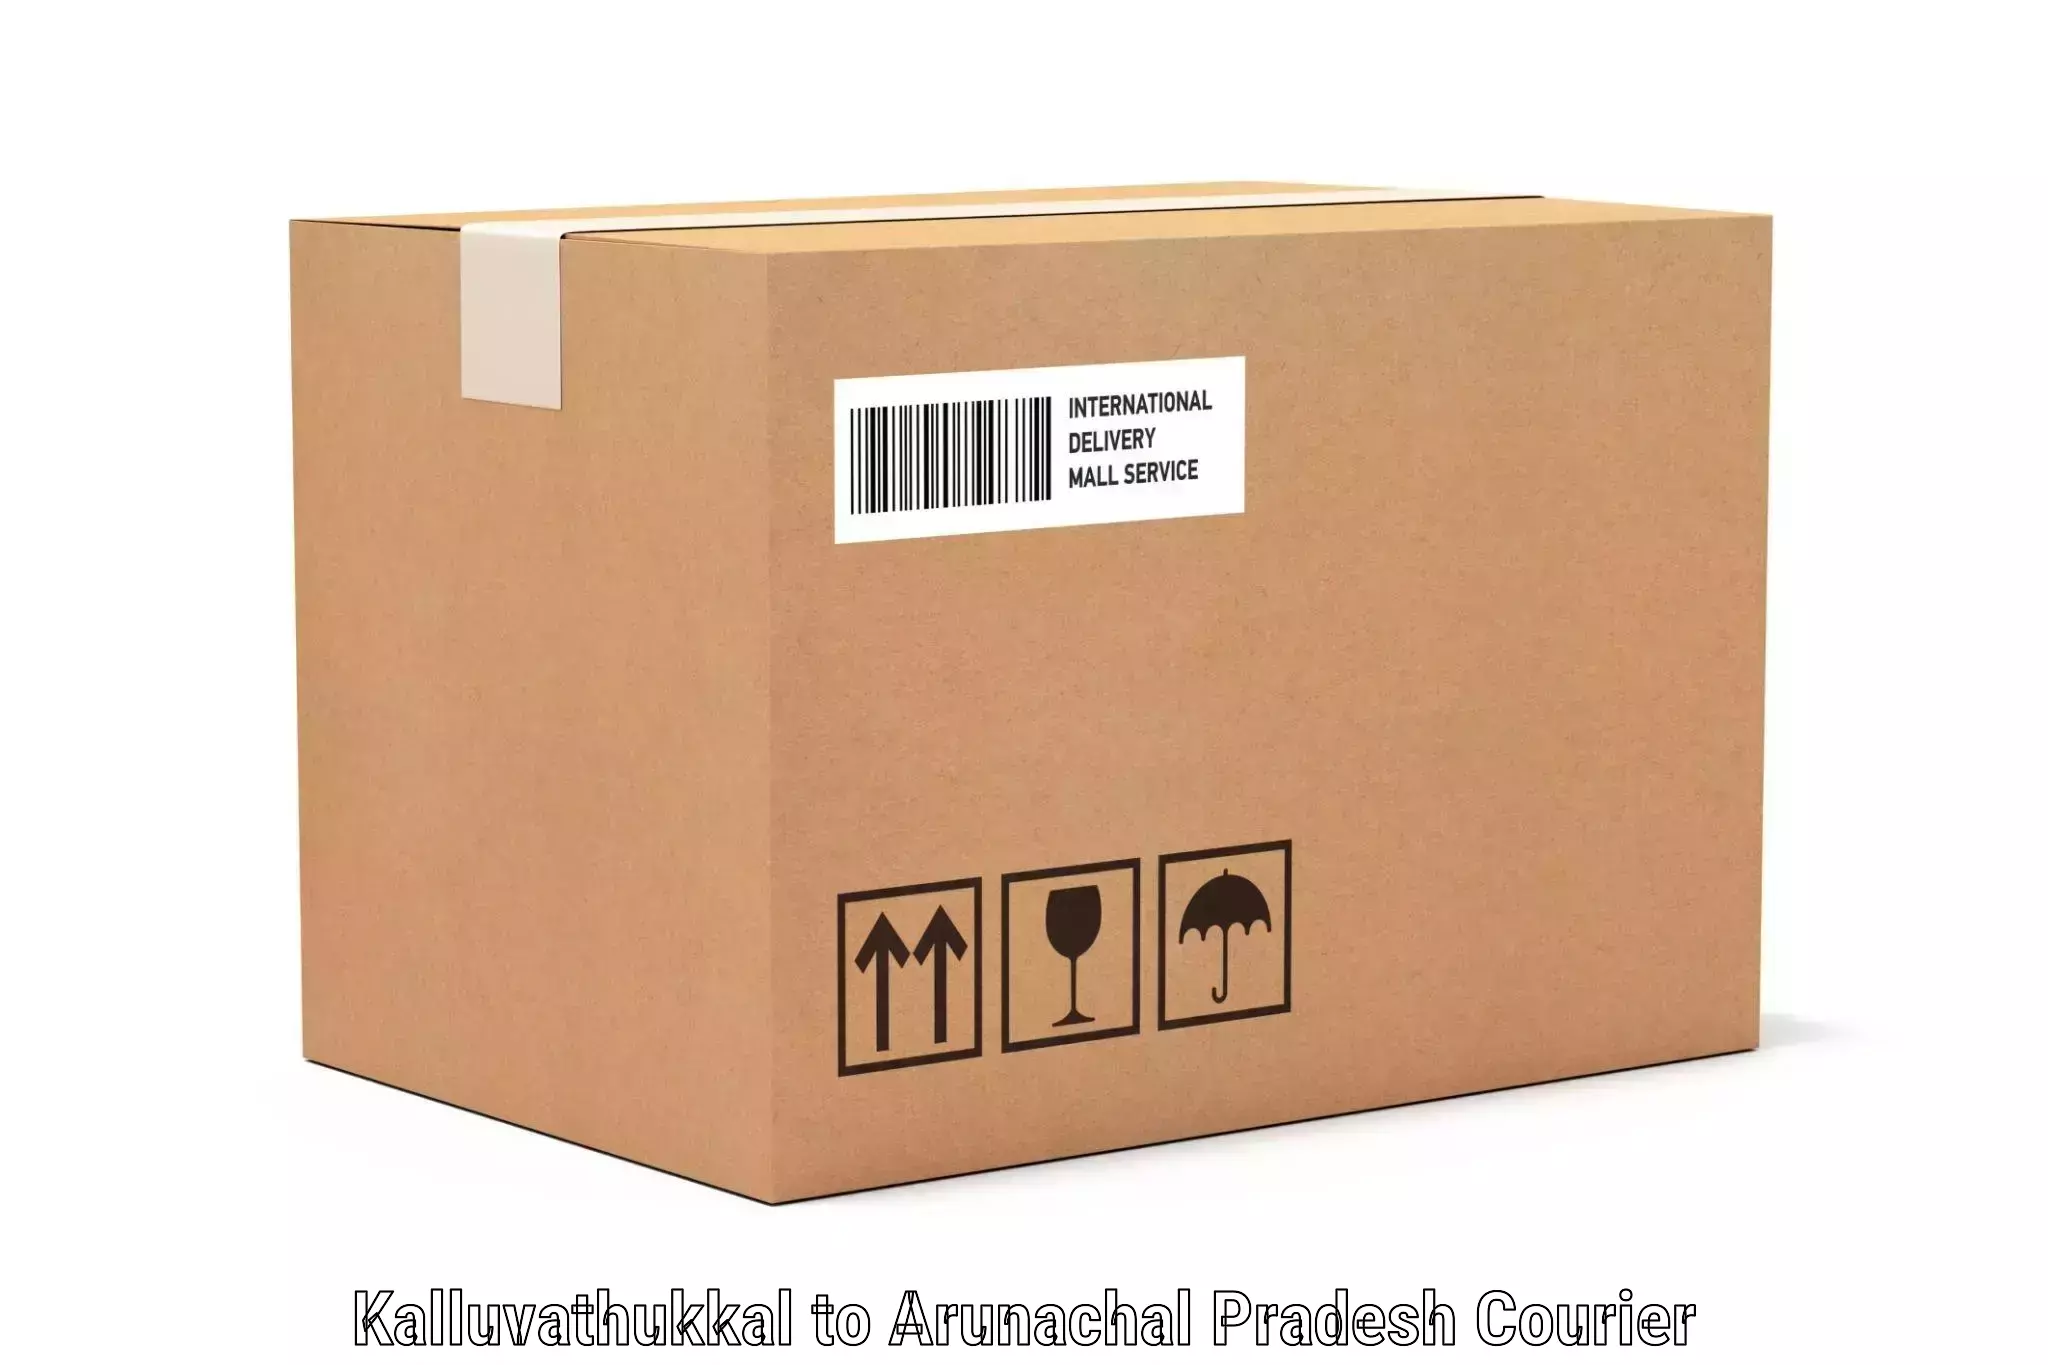 Luggage delivery optimization Kalluvathukkal to Nirjuli